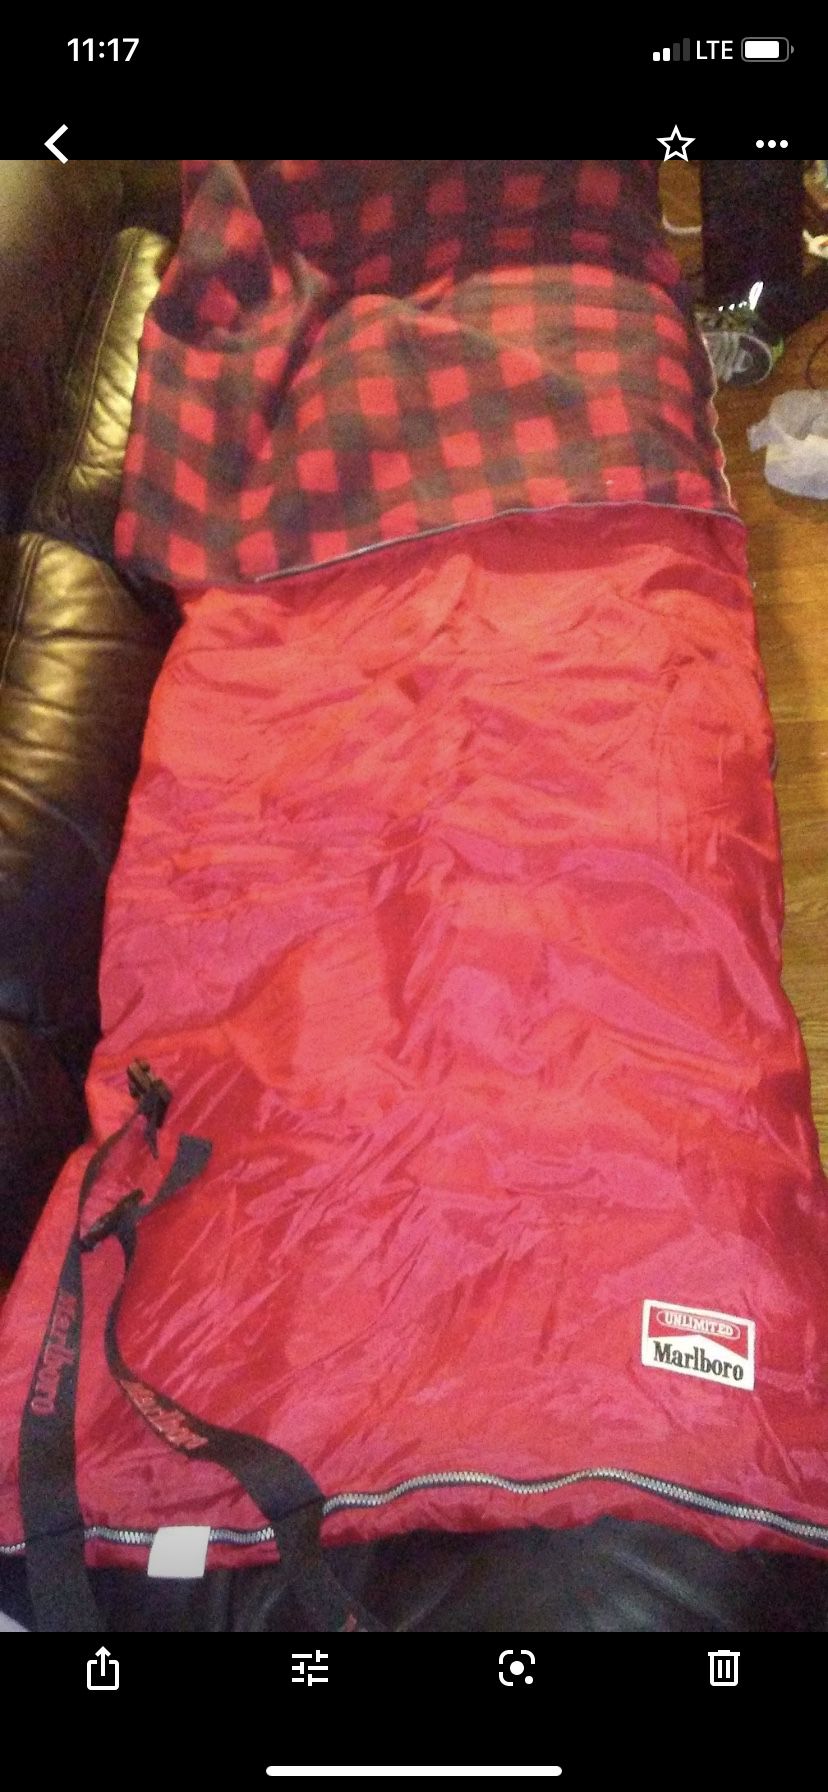 Vintage unlimited Marlboro adult sleeping bag